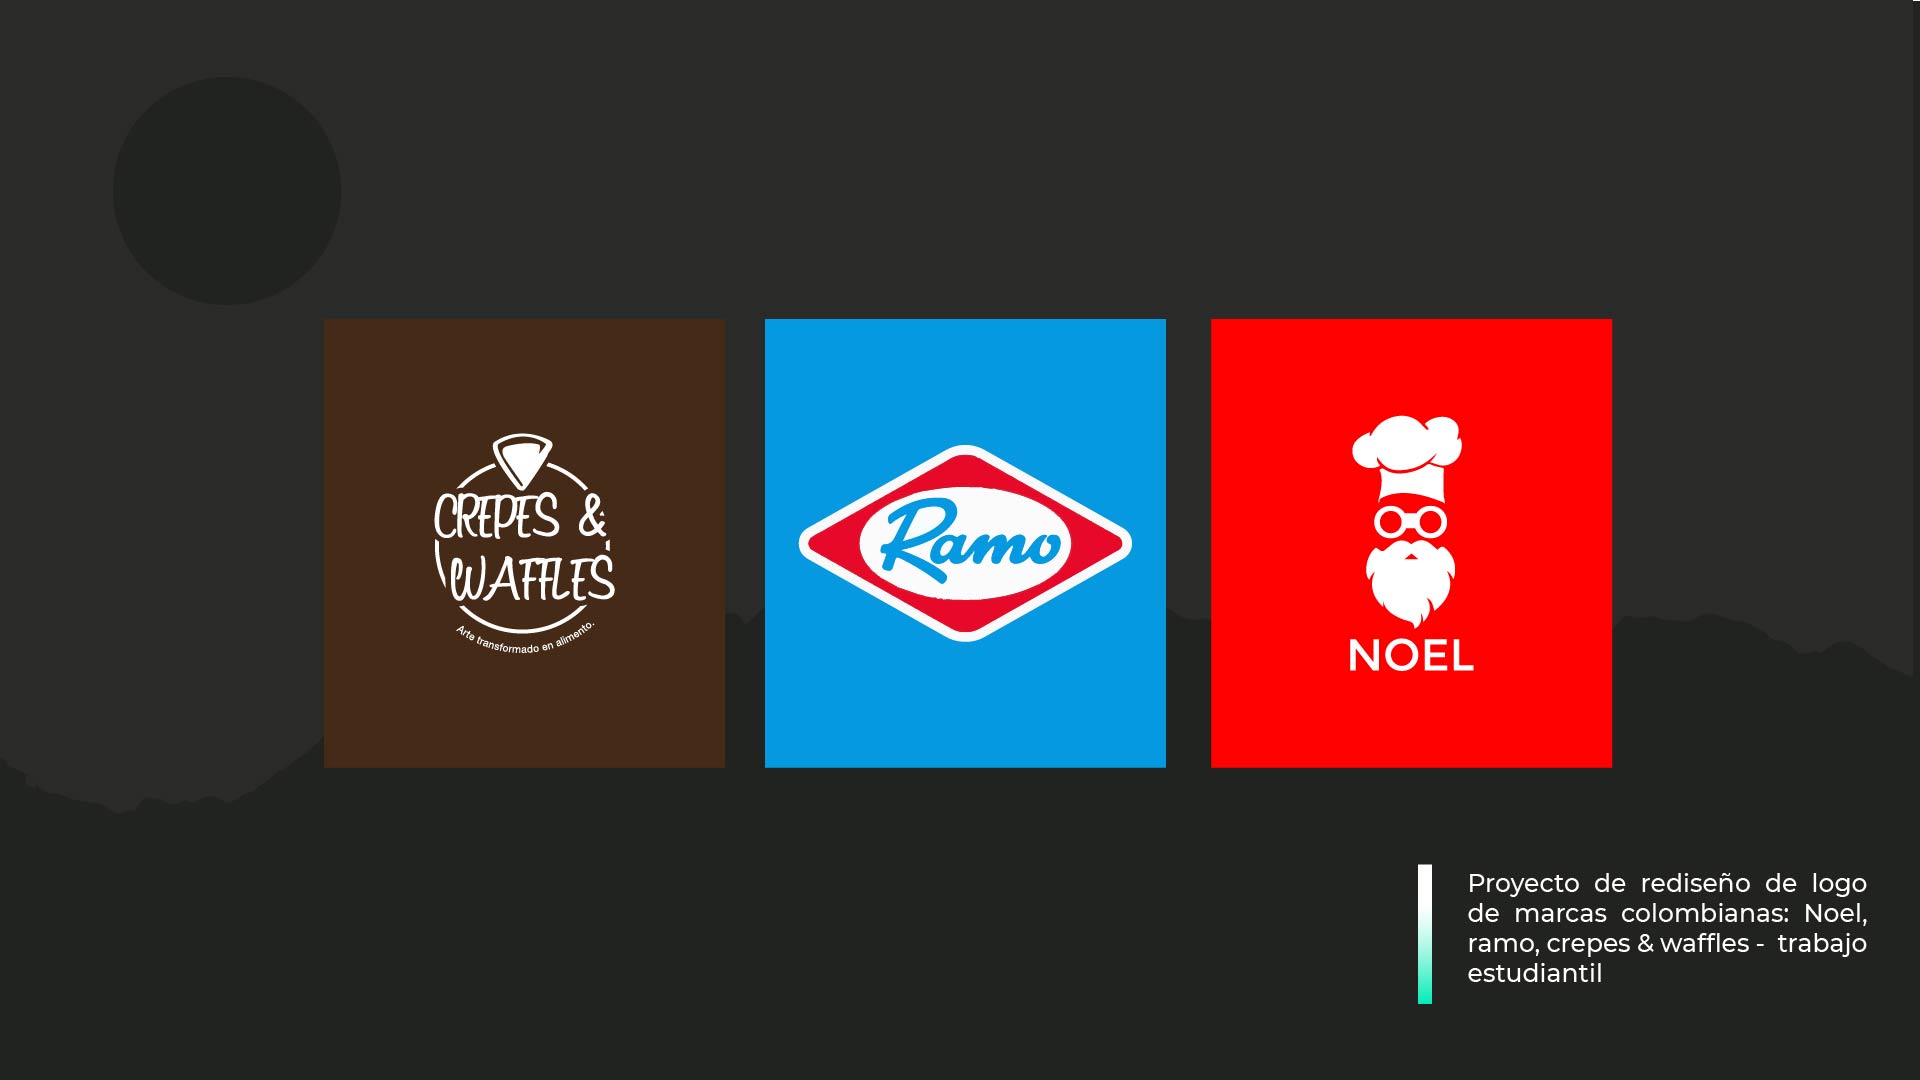 rH

Zz
lo}
[L1}
=

 

Proyecto de rediseno de logo
de marcas colombianas: Noel,
ramo, crepes & waffles - trabajo
estudiantil